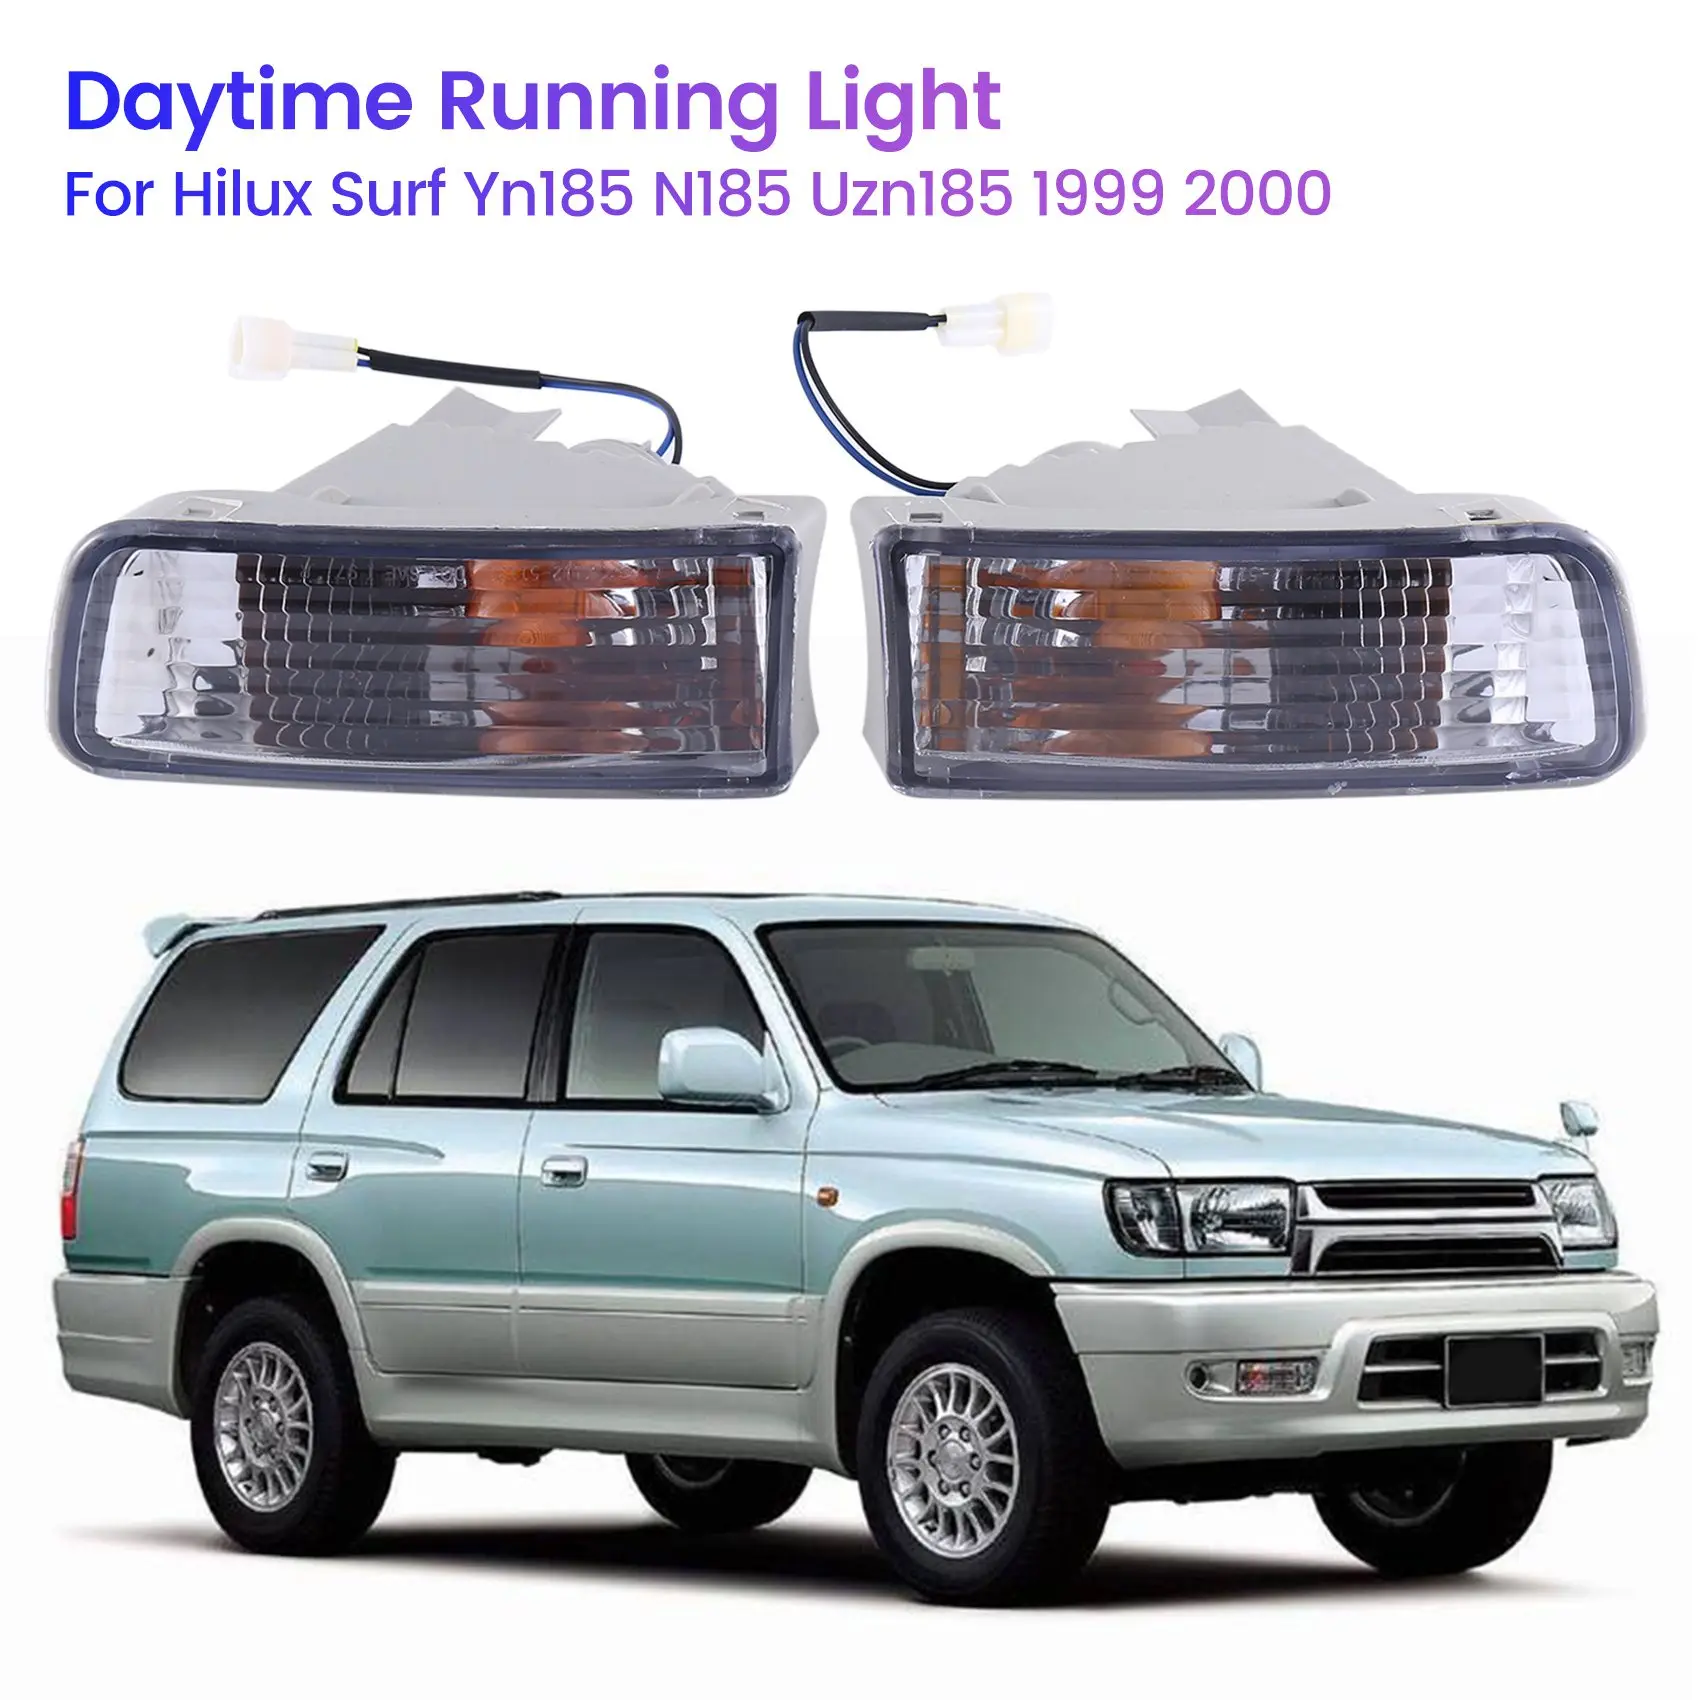 

Car Daytime Running Light Fog Light Lamp for Toyota Hilux Surf Yn185 N185 Uzn185 1999 2000